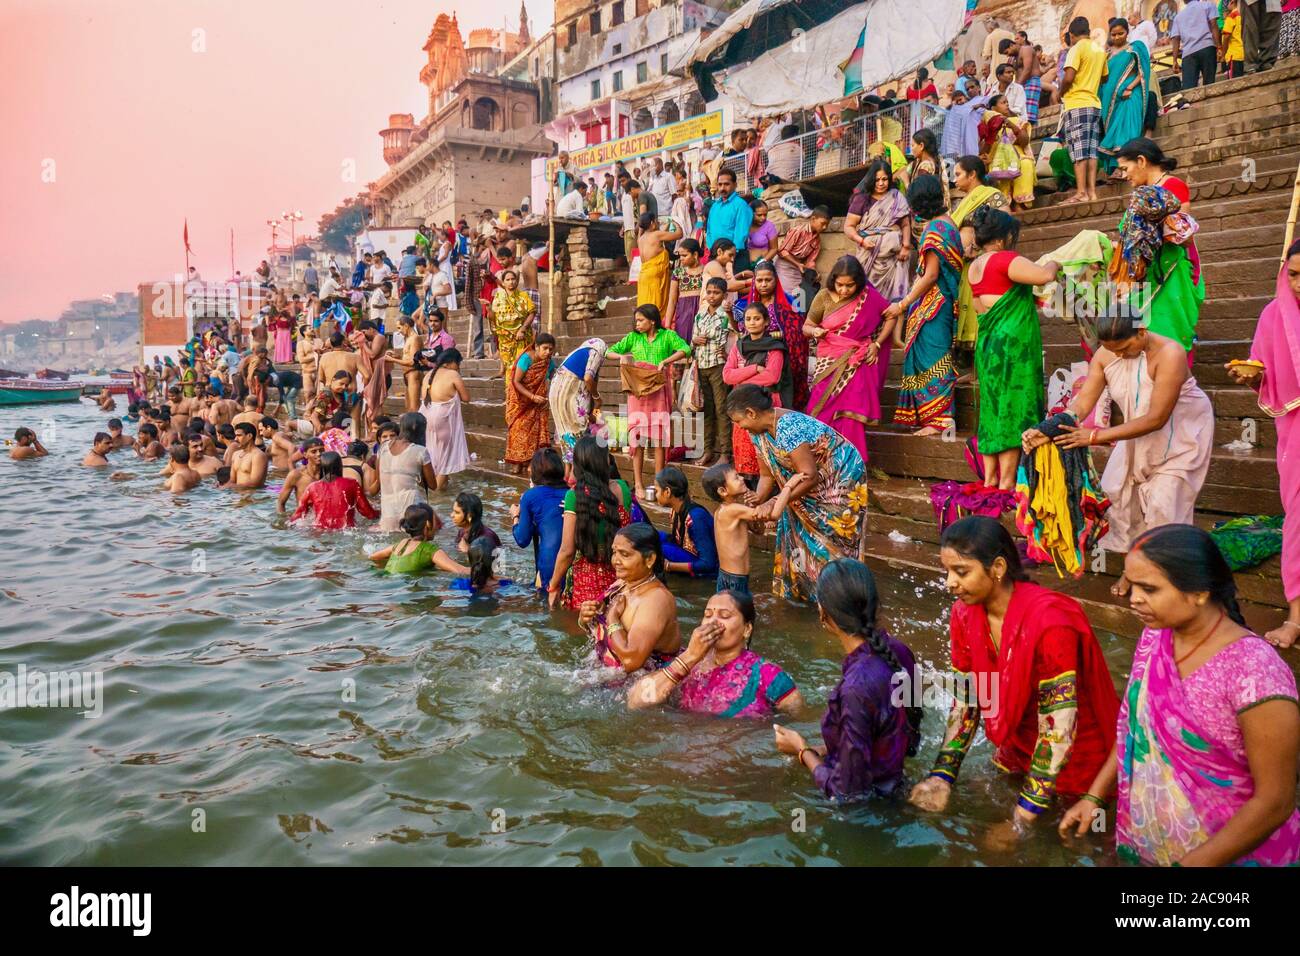 Les vêtements traditionnels colorés et rituel religieux hindou de la baignade dans le Gange de l'antique ghats de Varanasi. Banque D'Images